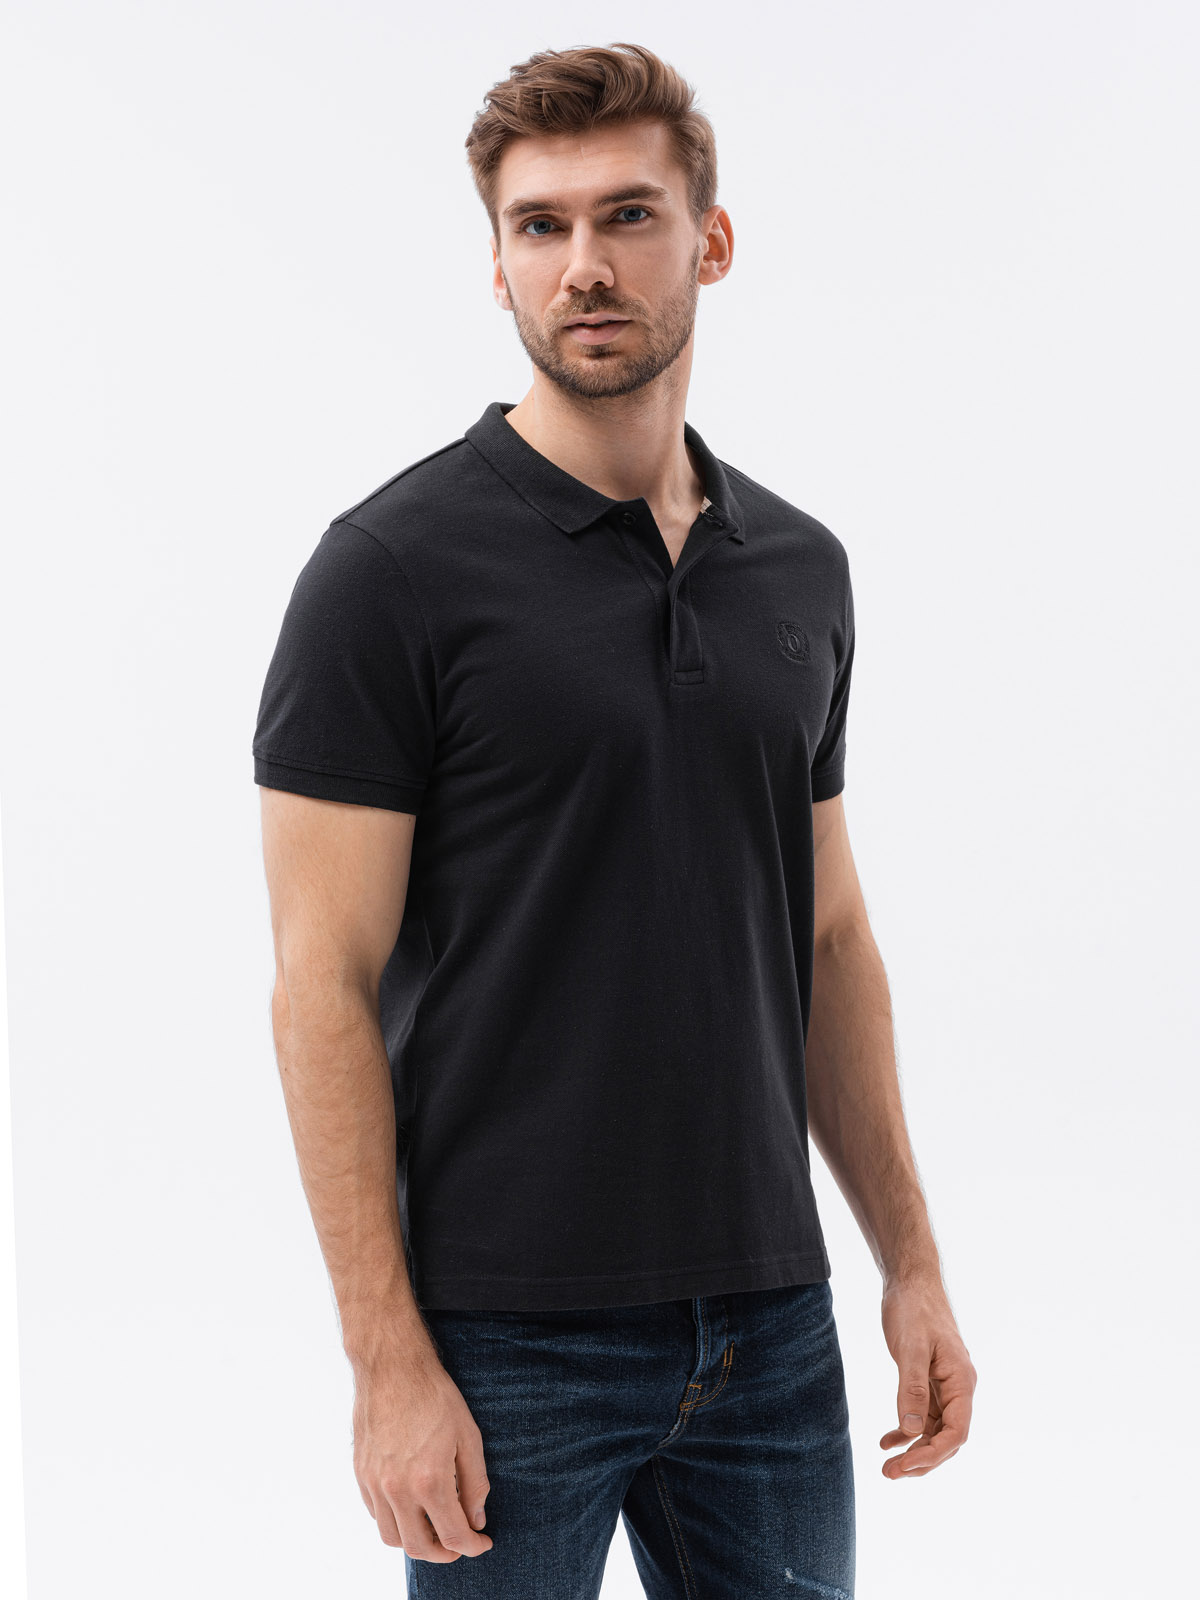 Bluza polo simpla barbati S1374 - negru